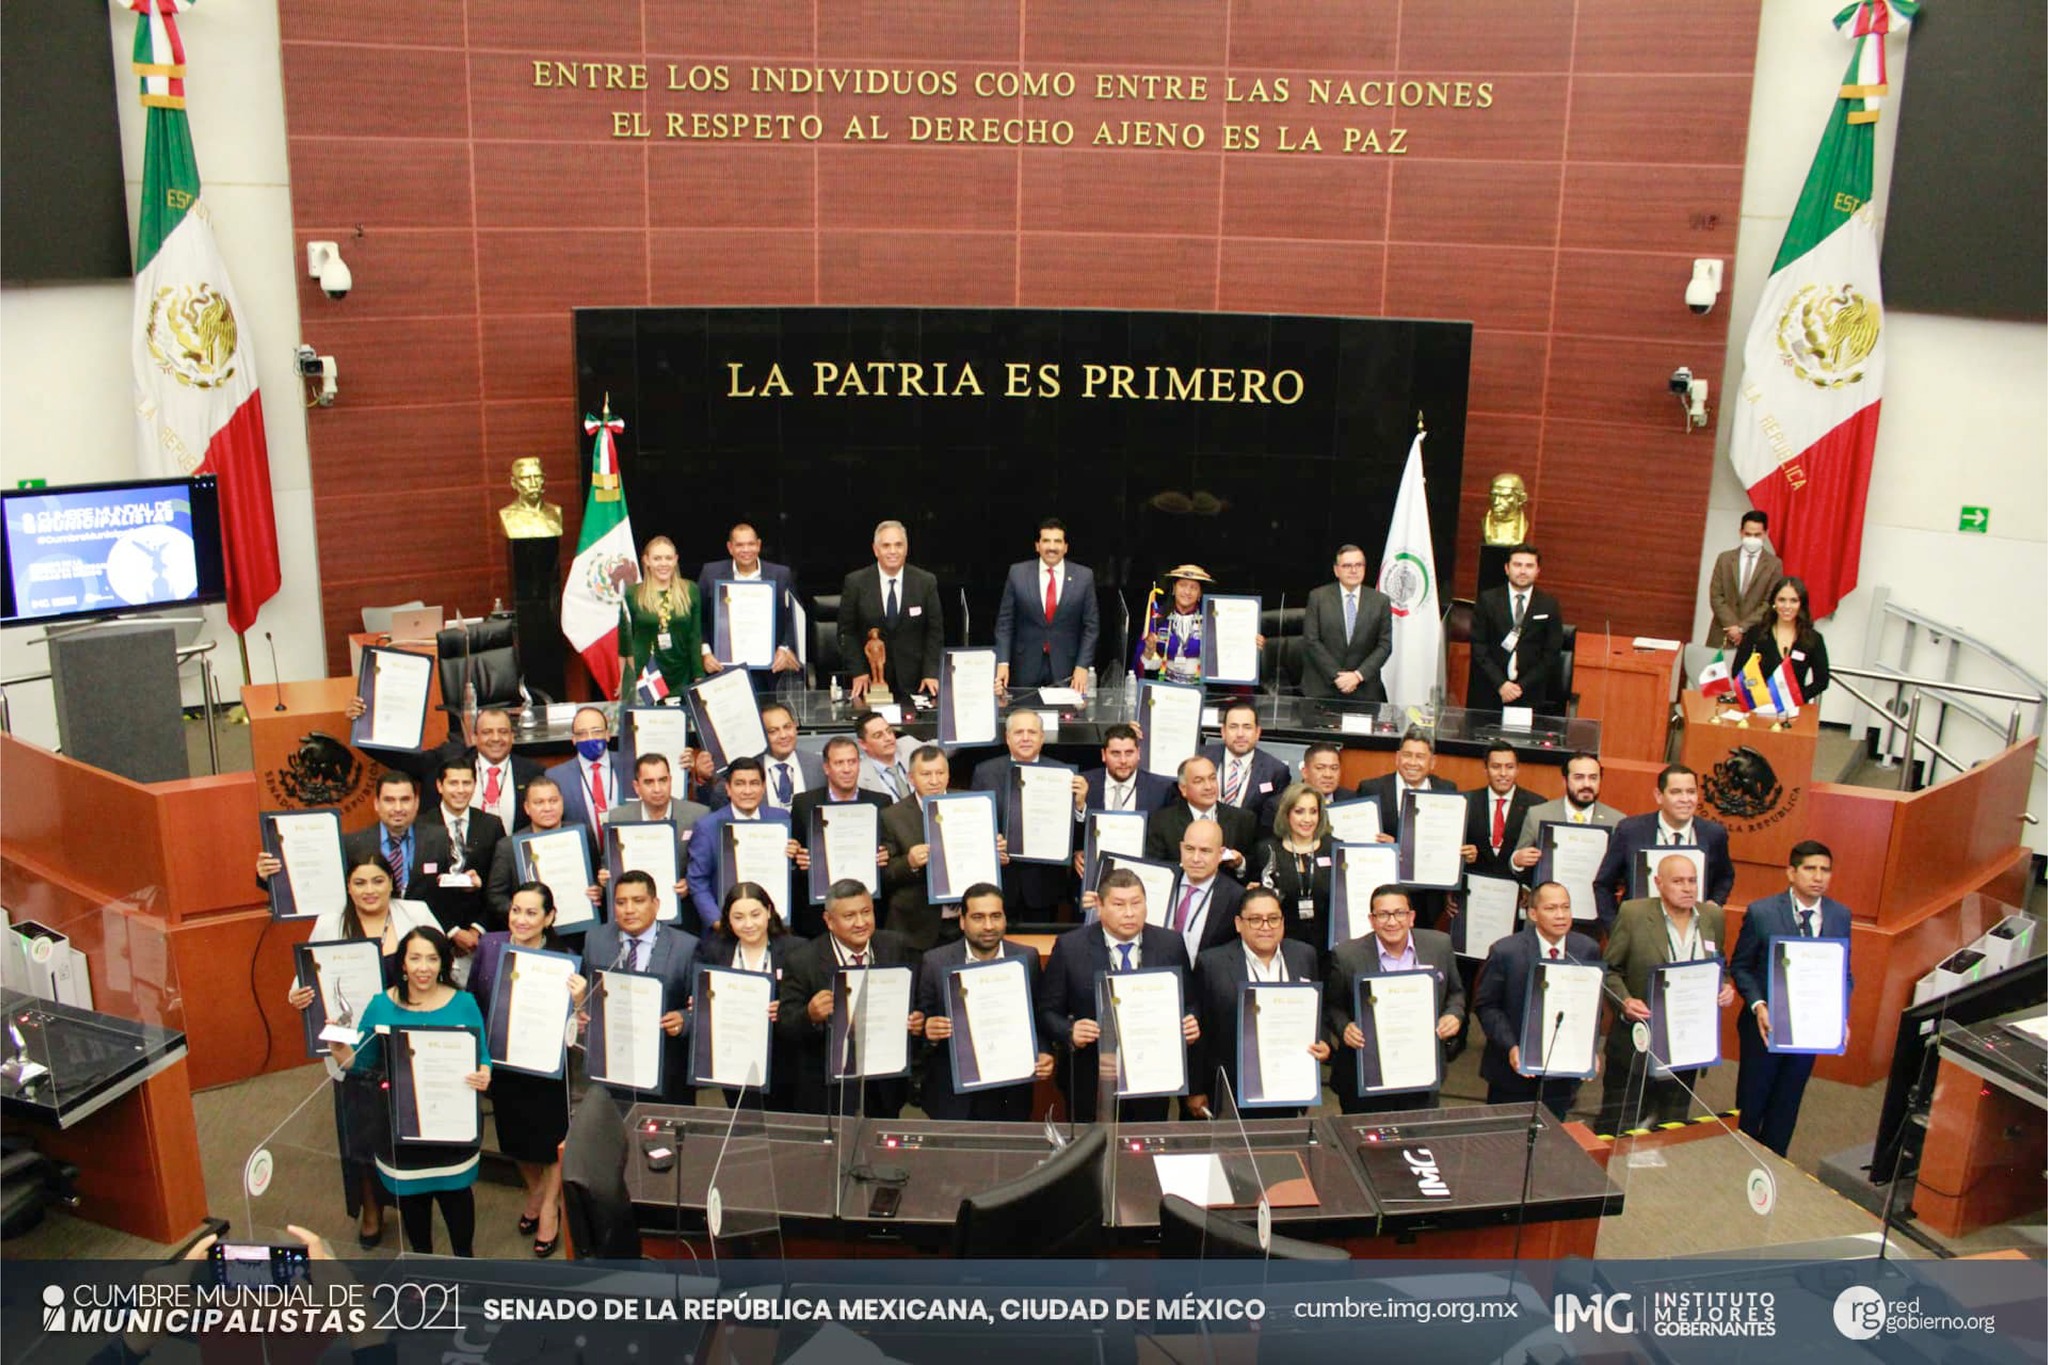 Cumbre Mundial de Municipalistas 2021 en Ciudad de México. Instituto Mejores Gobernantes A.C